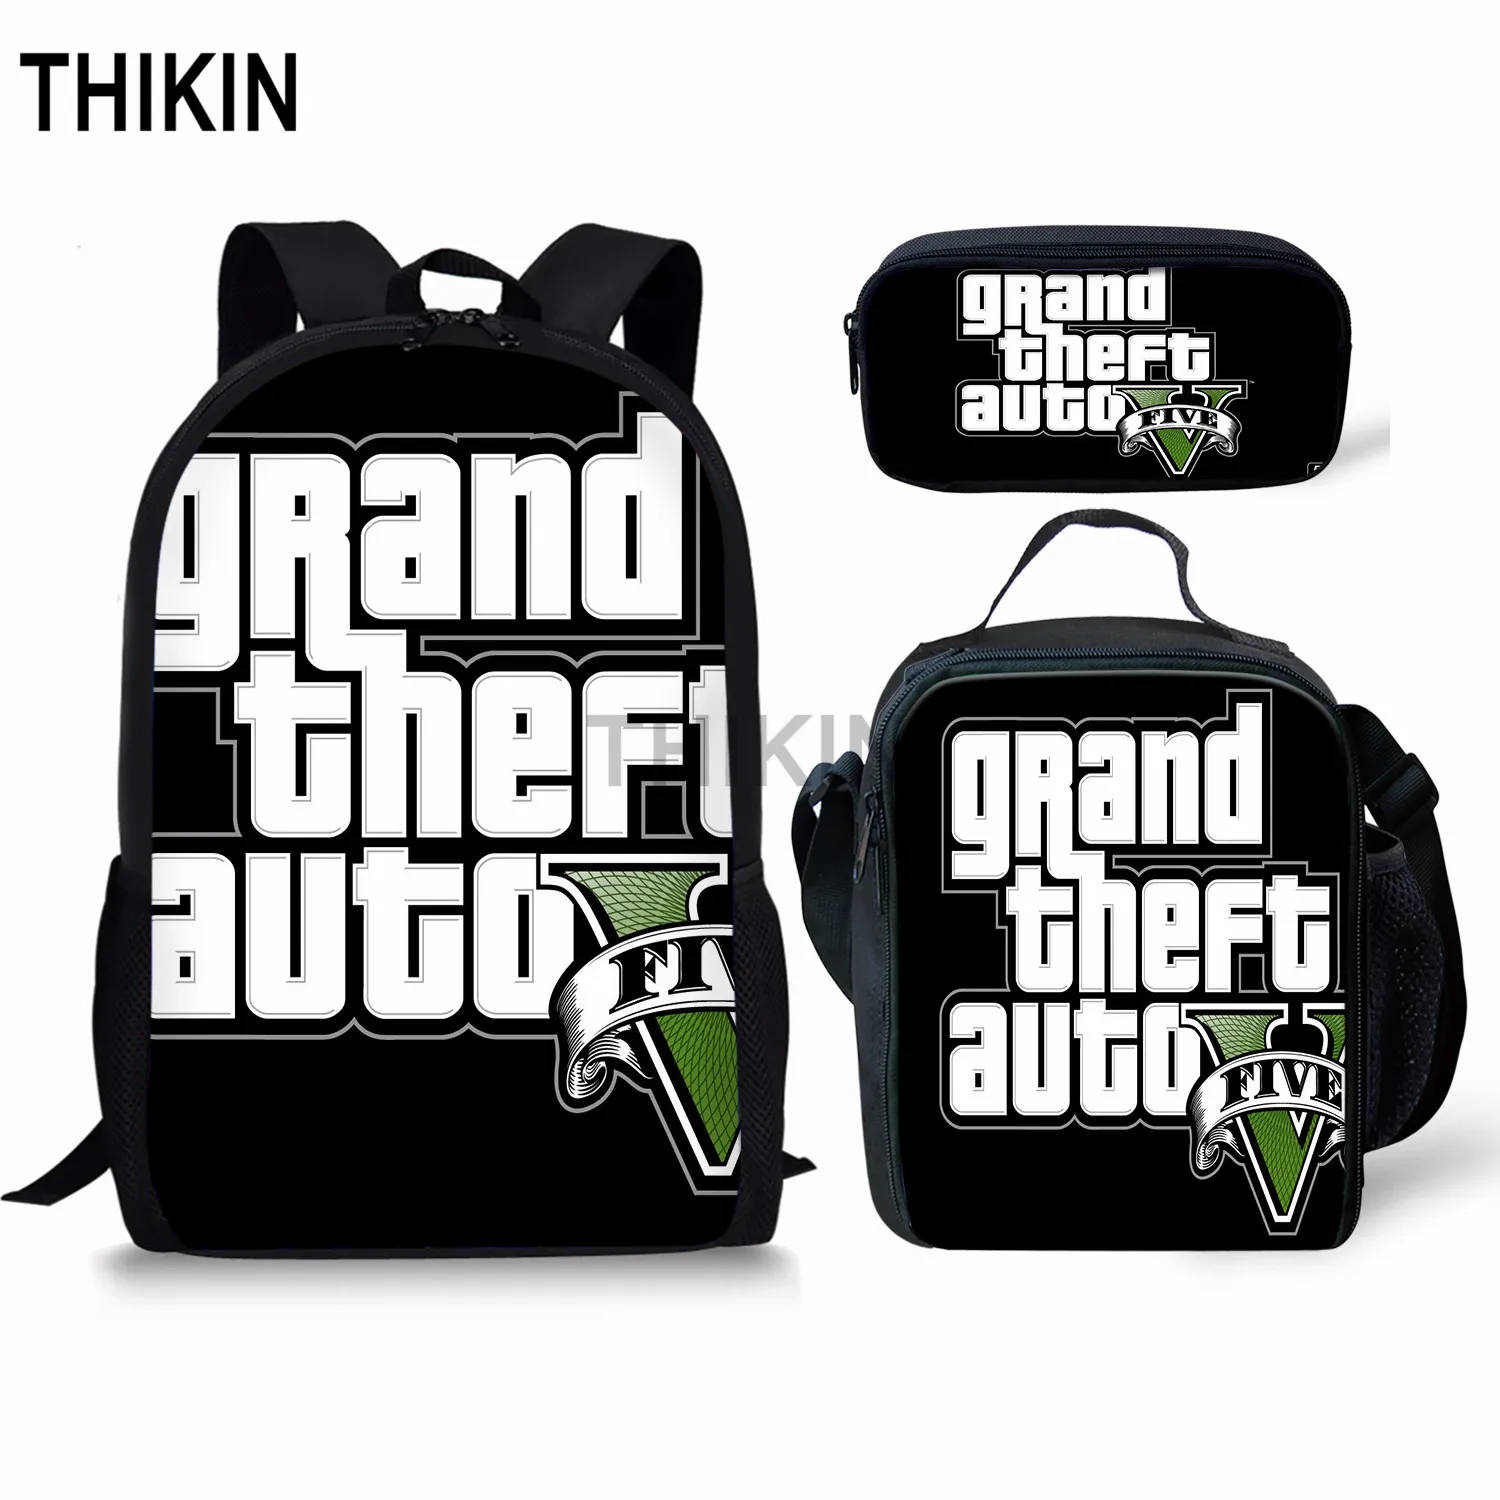 THIKIN Grand Theft Auto школьные сумки для подростков мальчиков 3 шт./компл. сумки на плечо крутая игра GTA рюкзак комплект для детей; обувь для девочек; обувь для студентов; Mochila